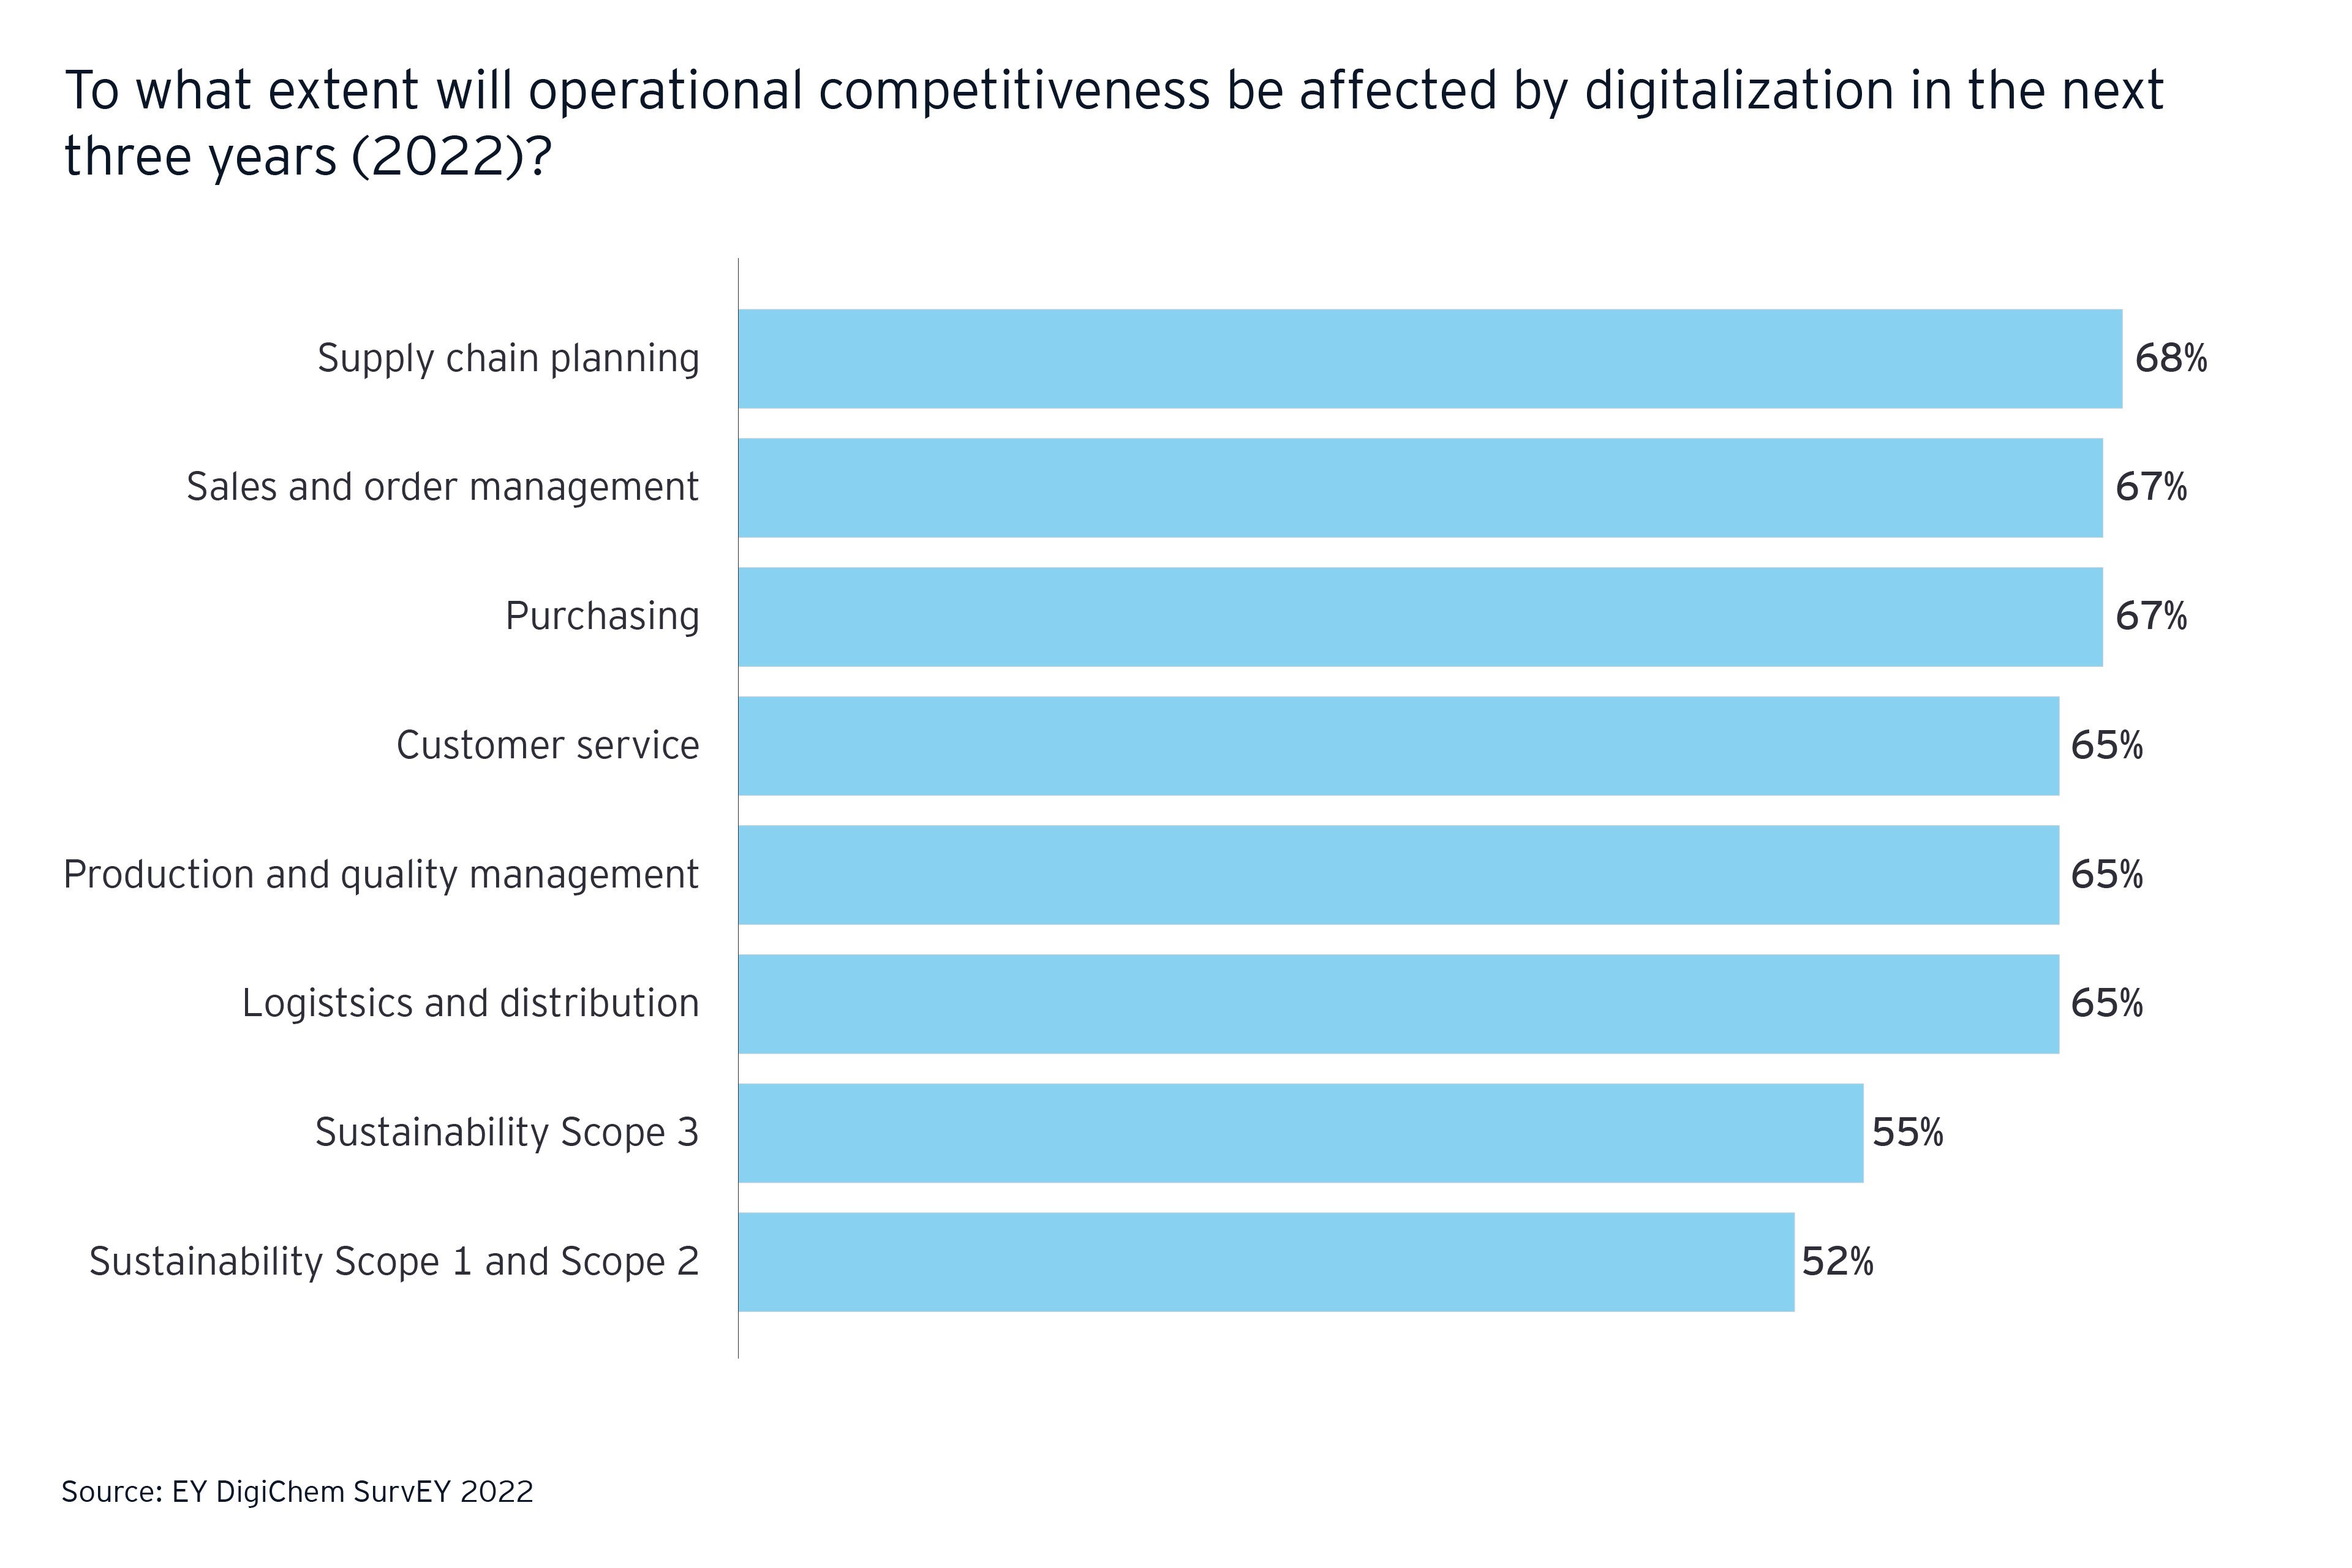 Efeitos da digitalização sobre a competitividade operacional